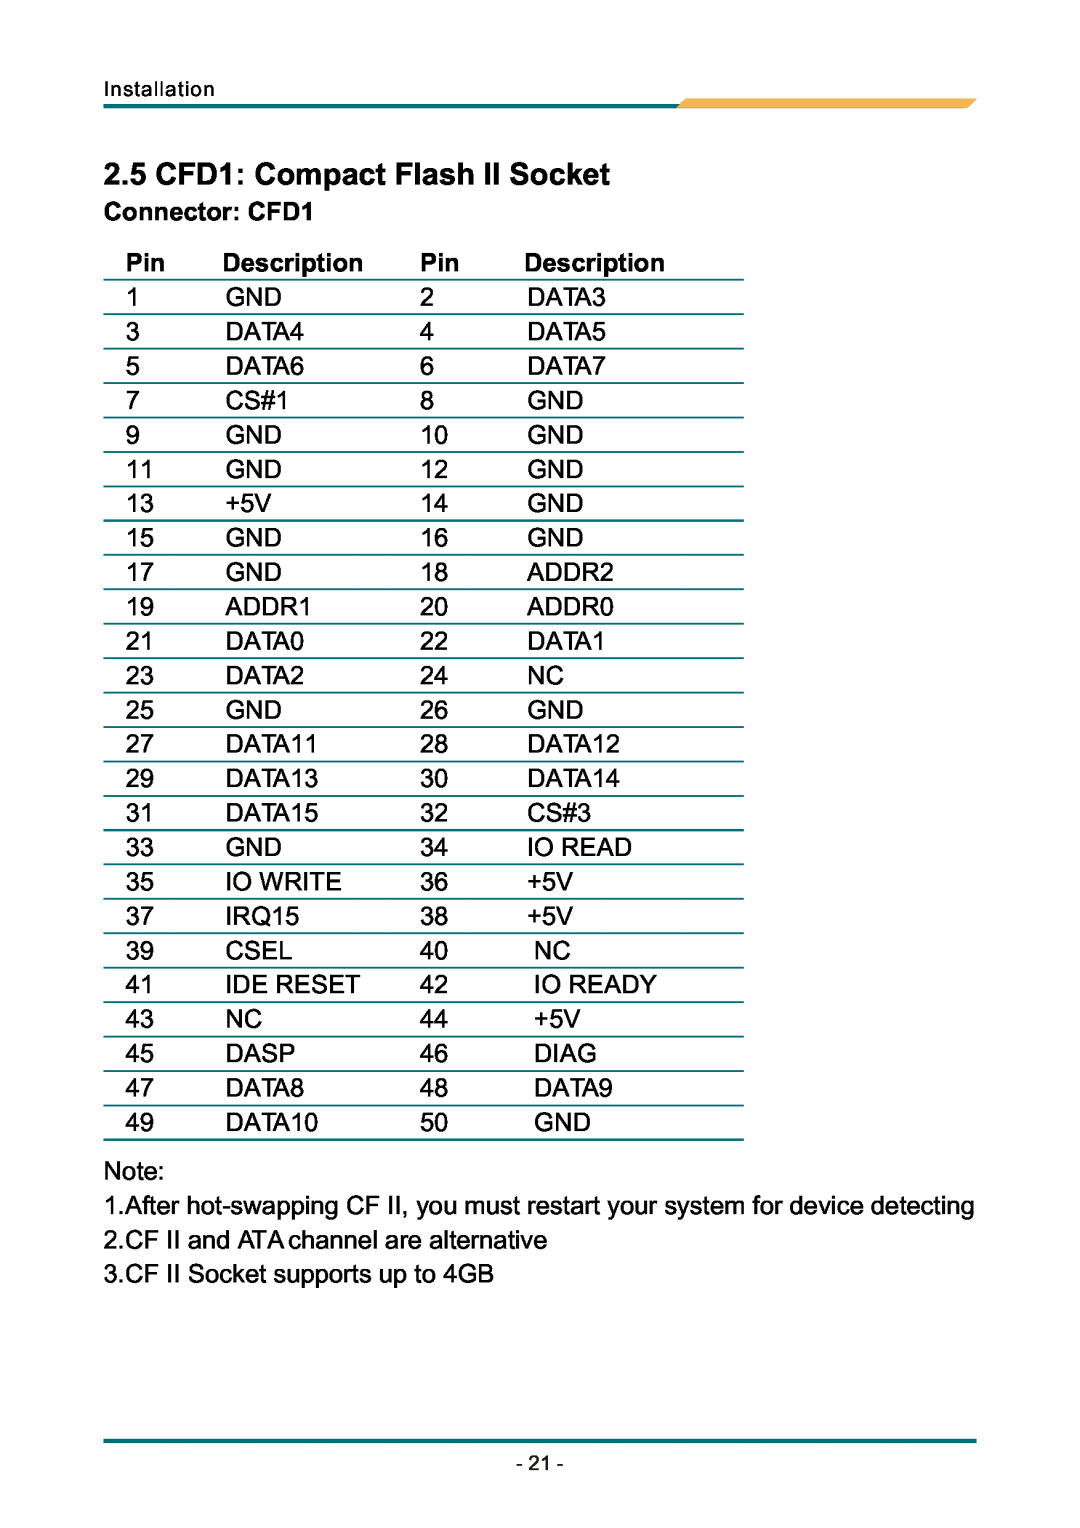 AMD SBX-5363 manual 2.5 CFD1 Compact Flash II Socket, Connector CFD1, Description 